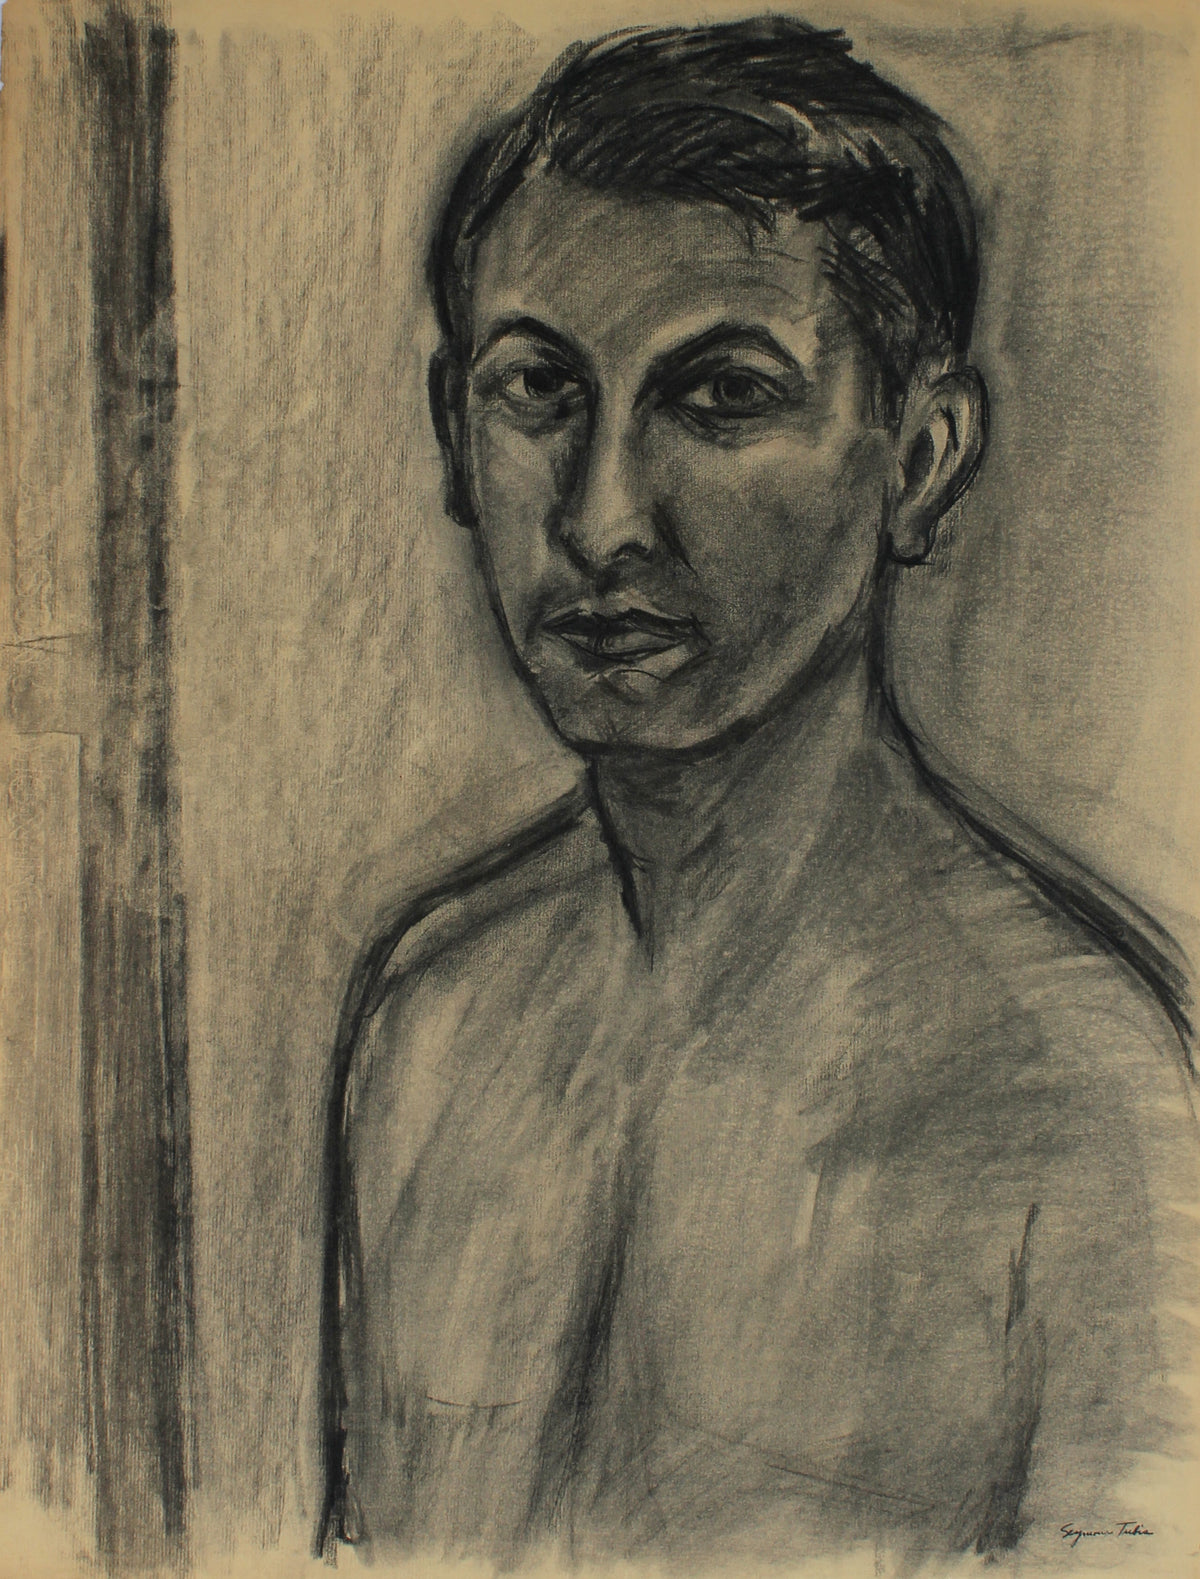 &lt;i&gt;Self Portrait&lt;/i&gt; &lt;br&gt;Mid-Late 20th Century Charcoal &lt;br&gt;&lt;br&gt;#66935